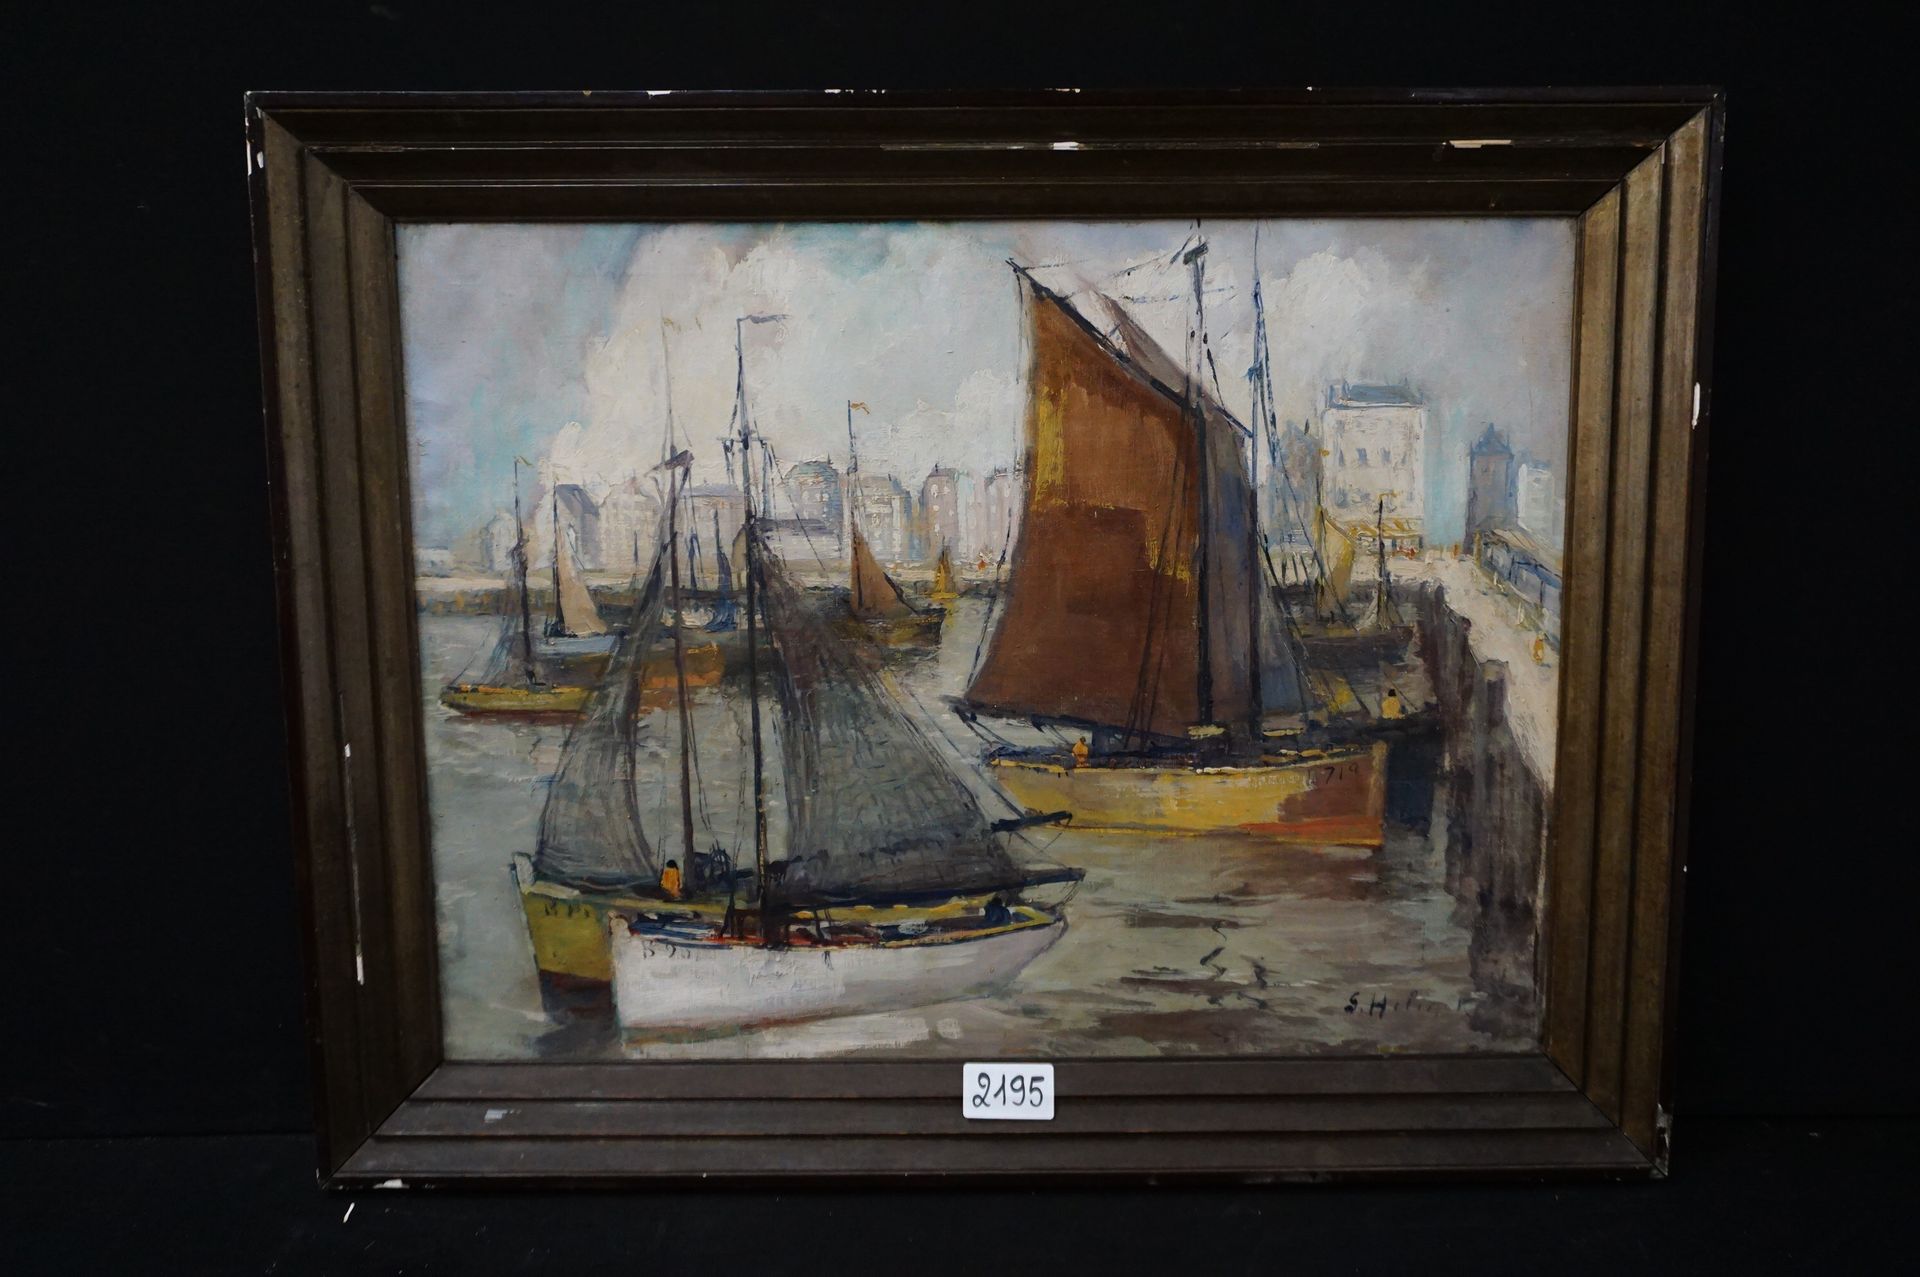 GUSTAVE HELINCK (1884 - 1954) "Blankenberge渔港" - 布面油画 - 已签名 - 60 x 80 cm